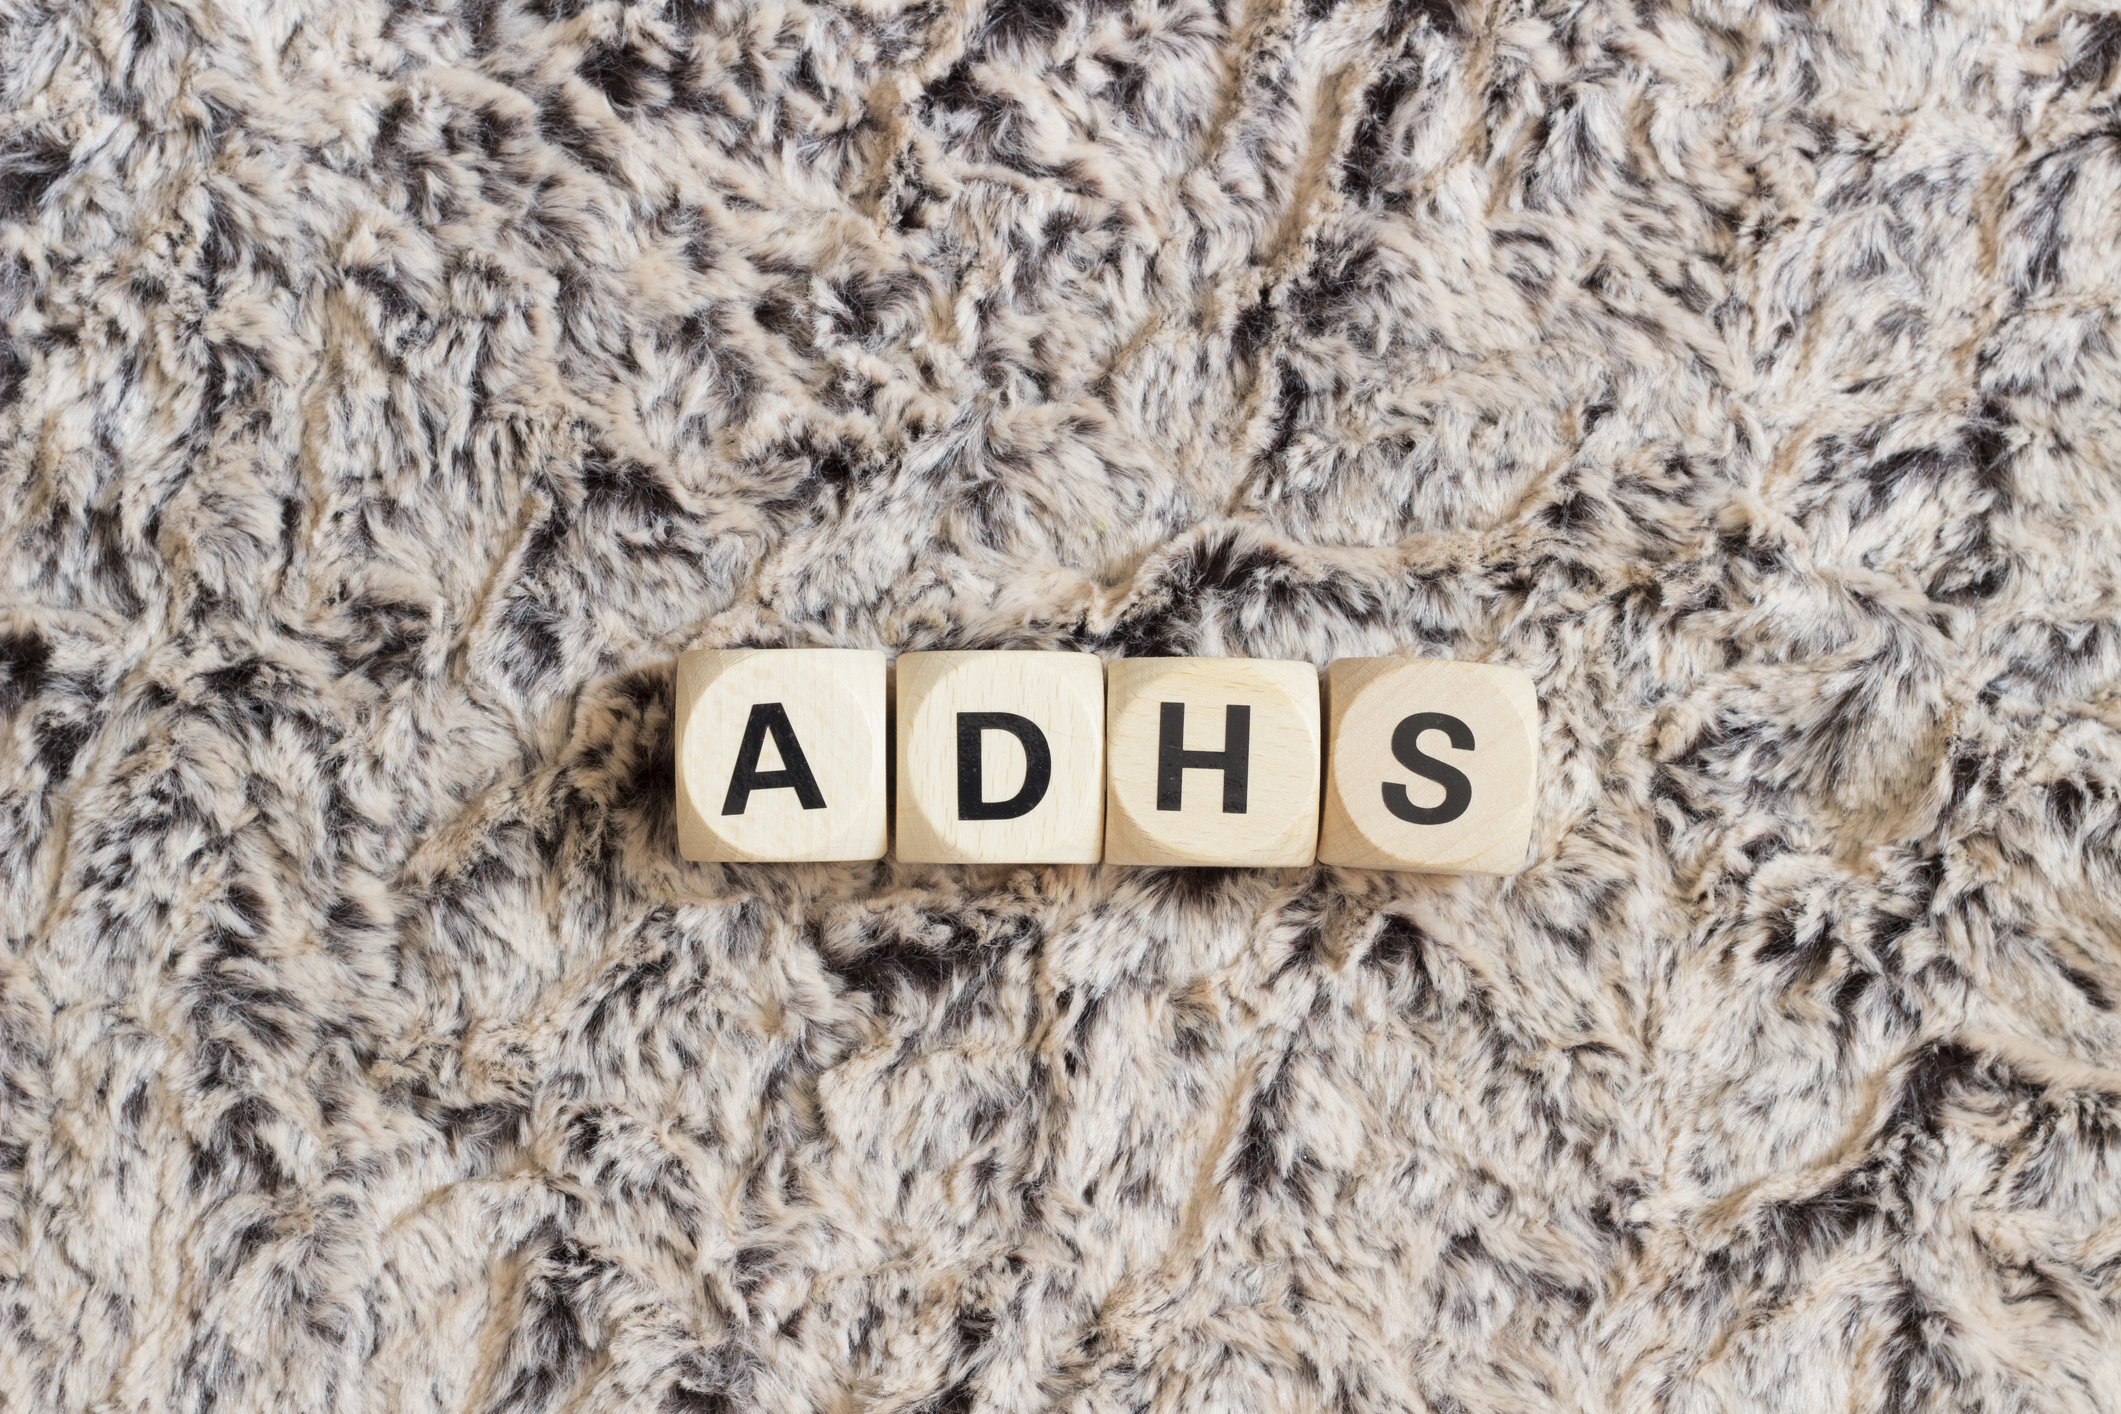 Medikamente in der ADHS-Therapie – Alles Pillepalle?